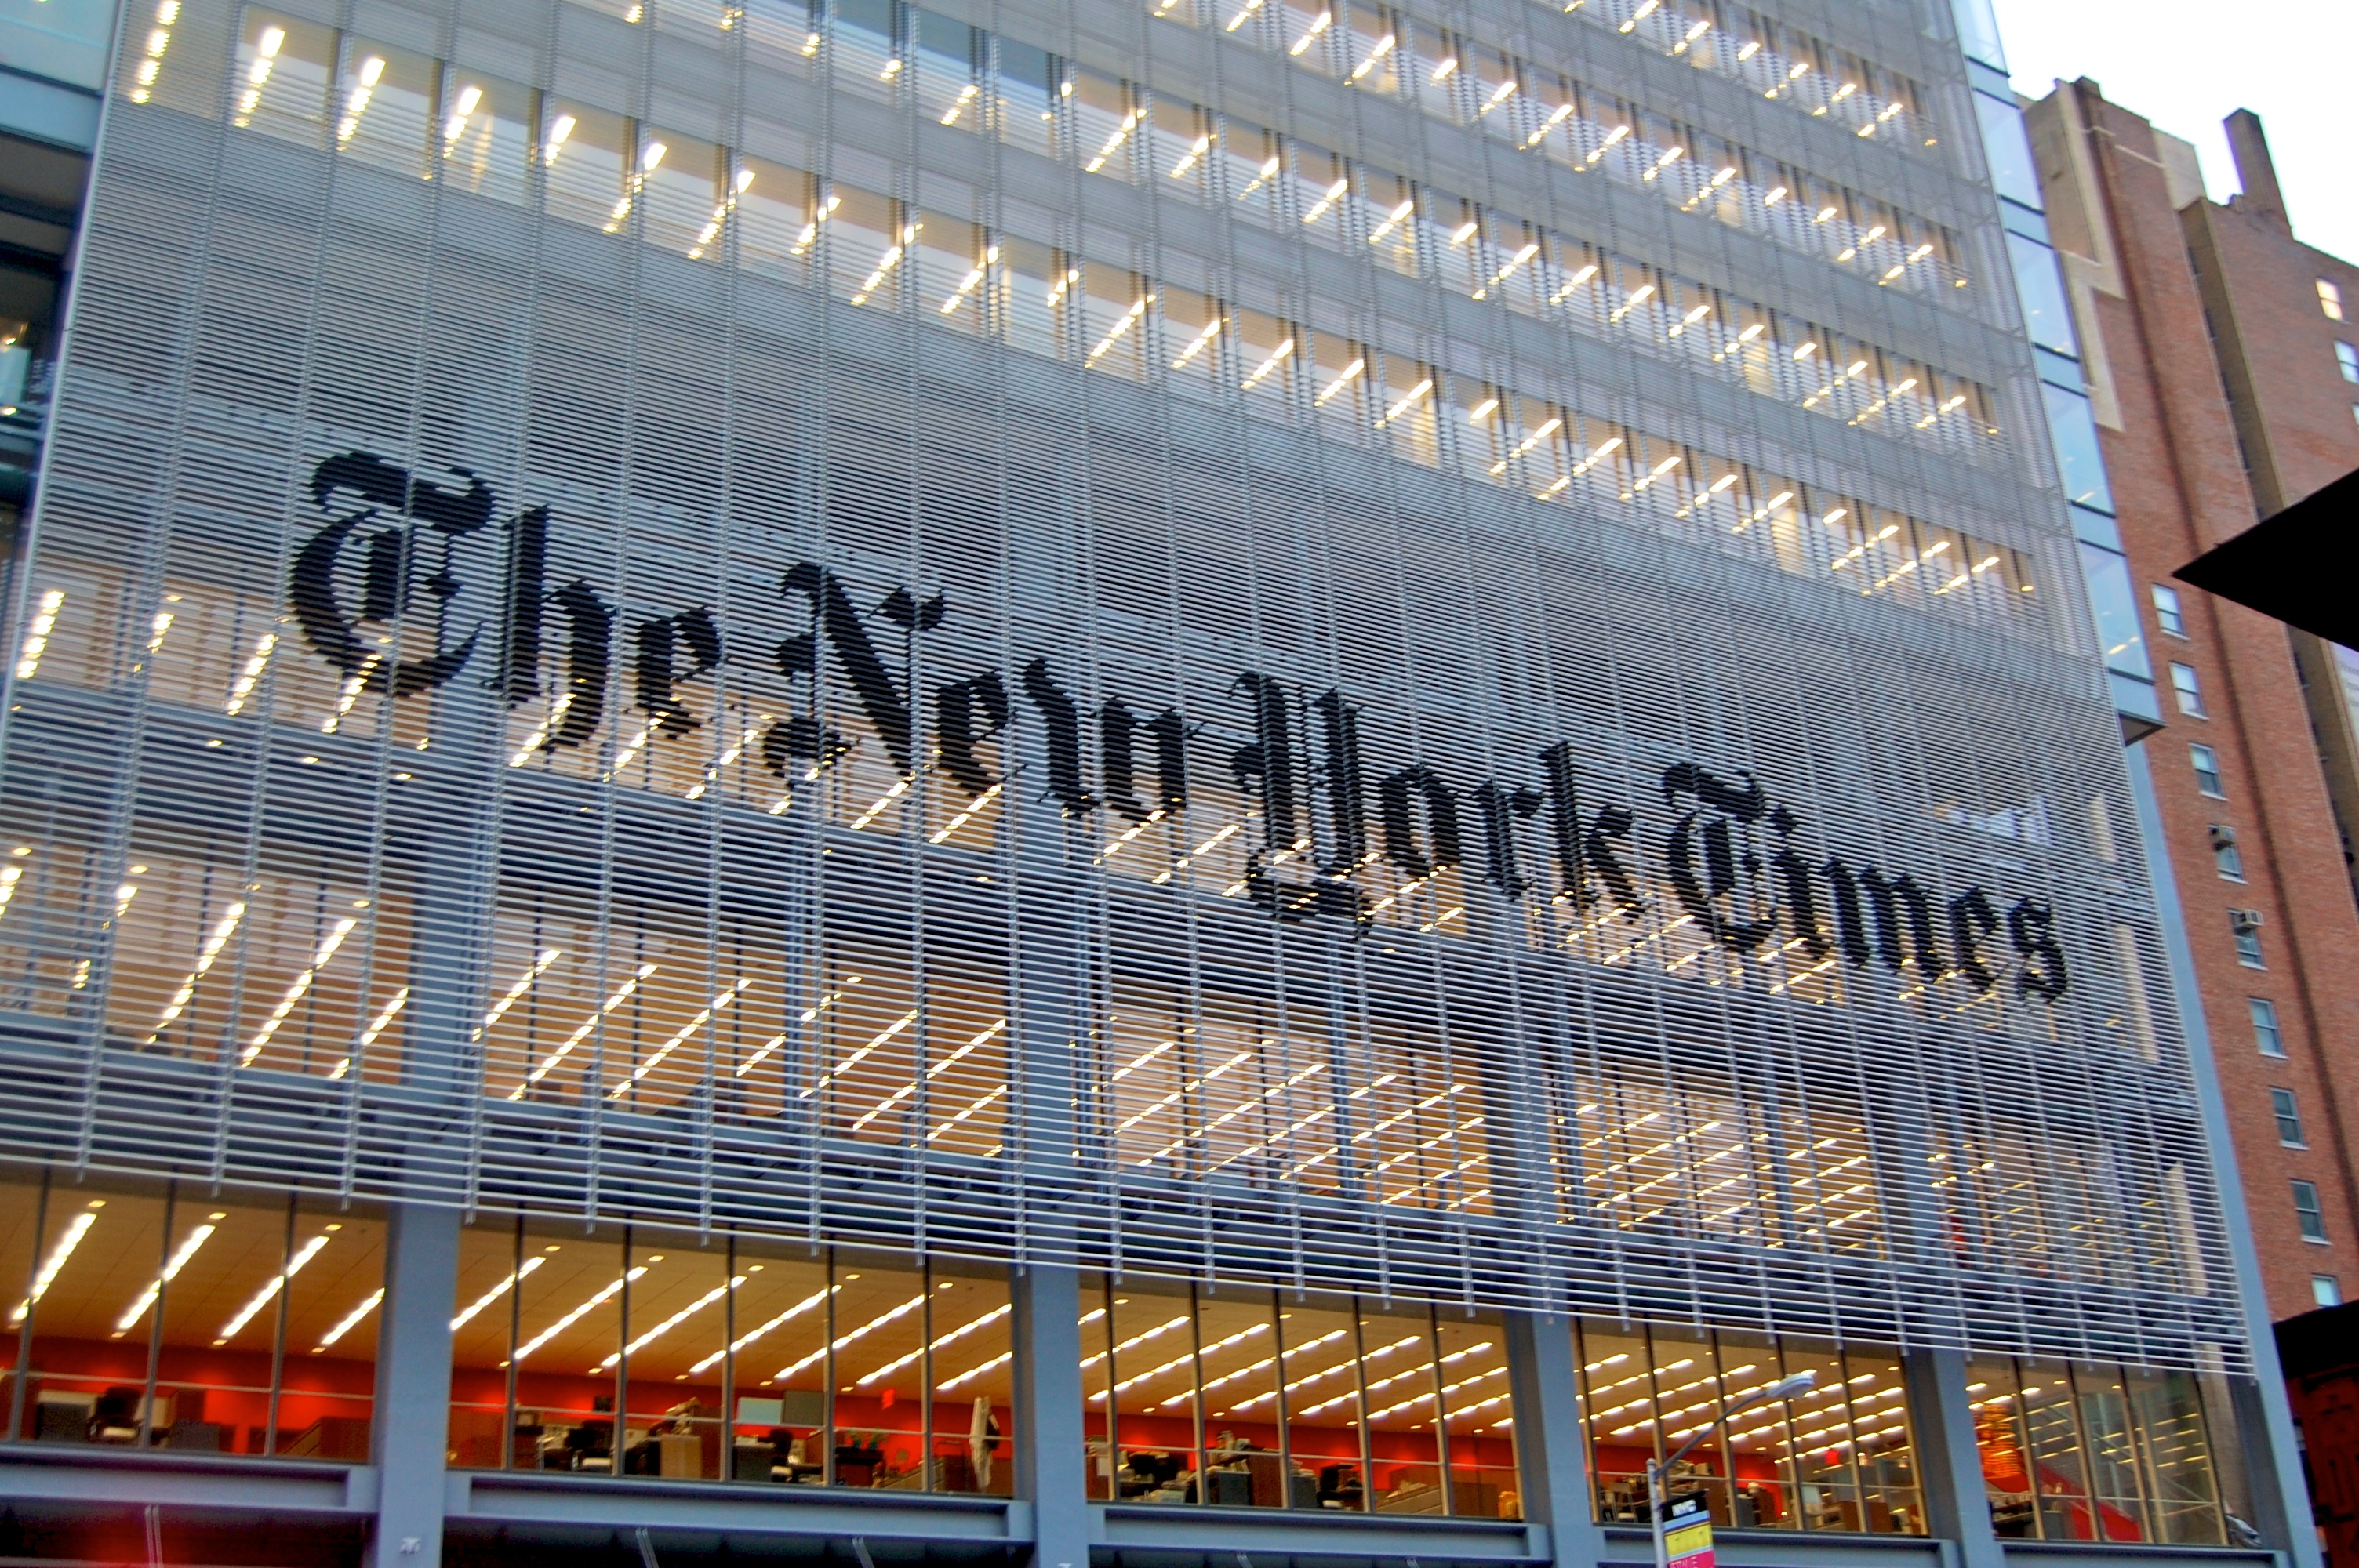 У The New York Times прокоментували фейкове інтерв’ю з Порошенком: «Нас втягли у явно пропагандистську війну»